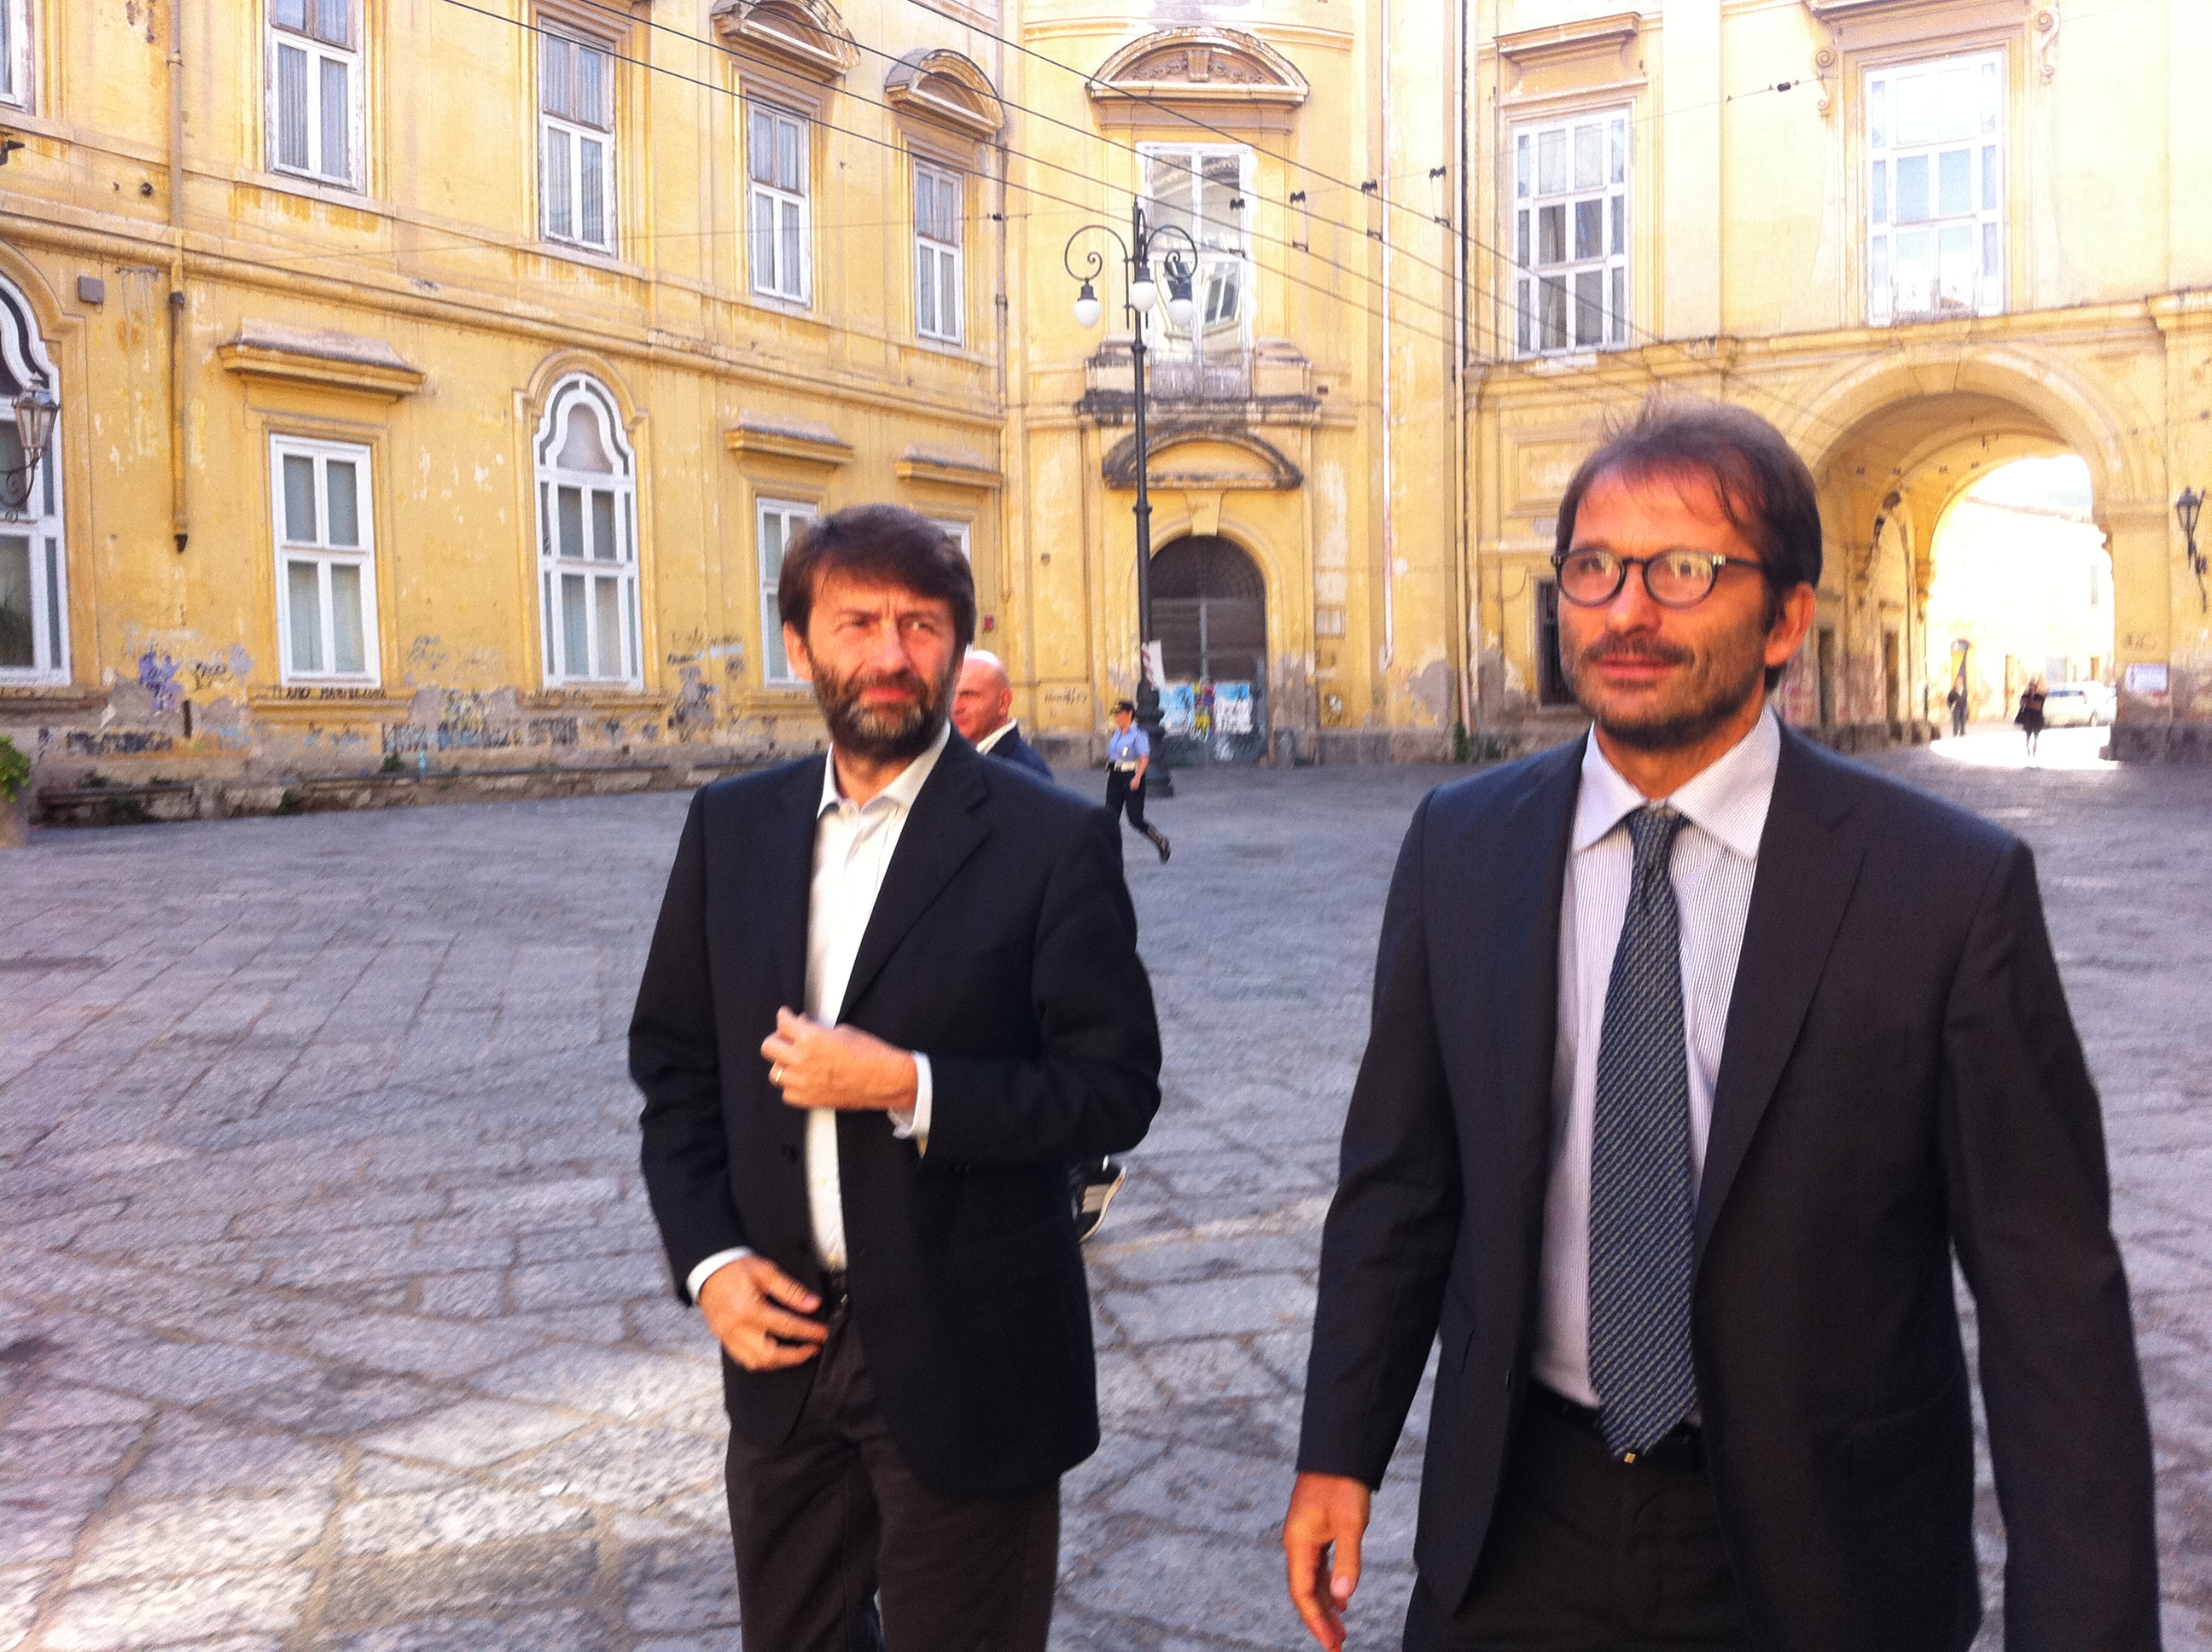 STATI DEL TURISMO Il Ministro Franceschini a Pietrarsa: “La Campania ha tutti i numeri per essere leader del settore turistico”